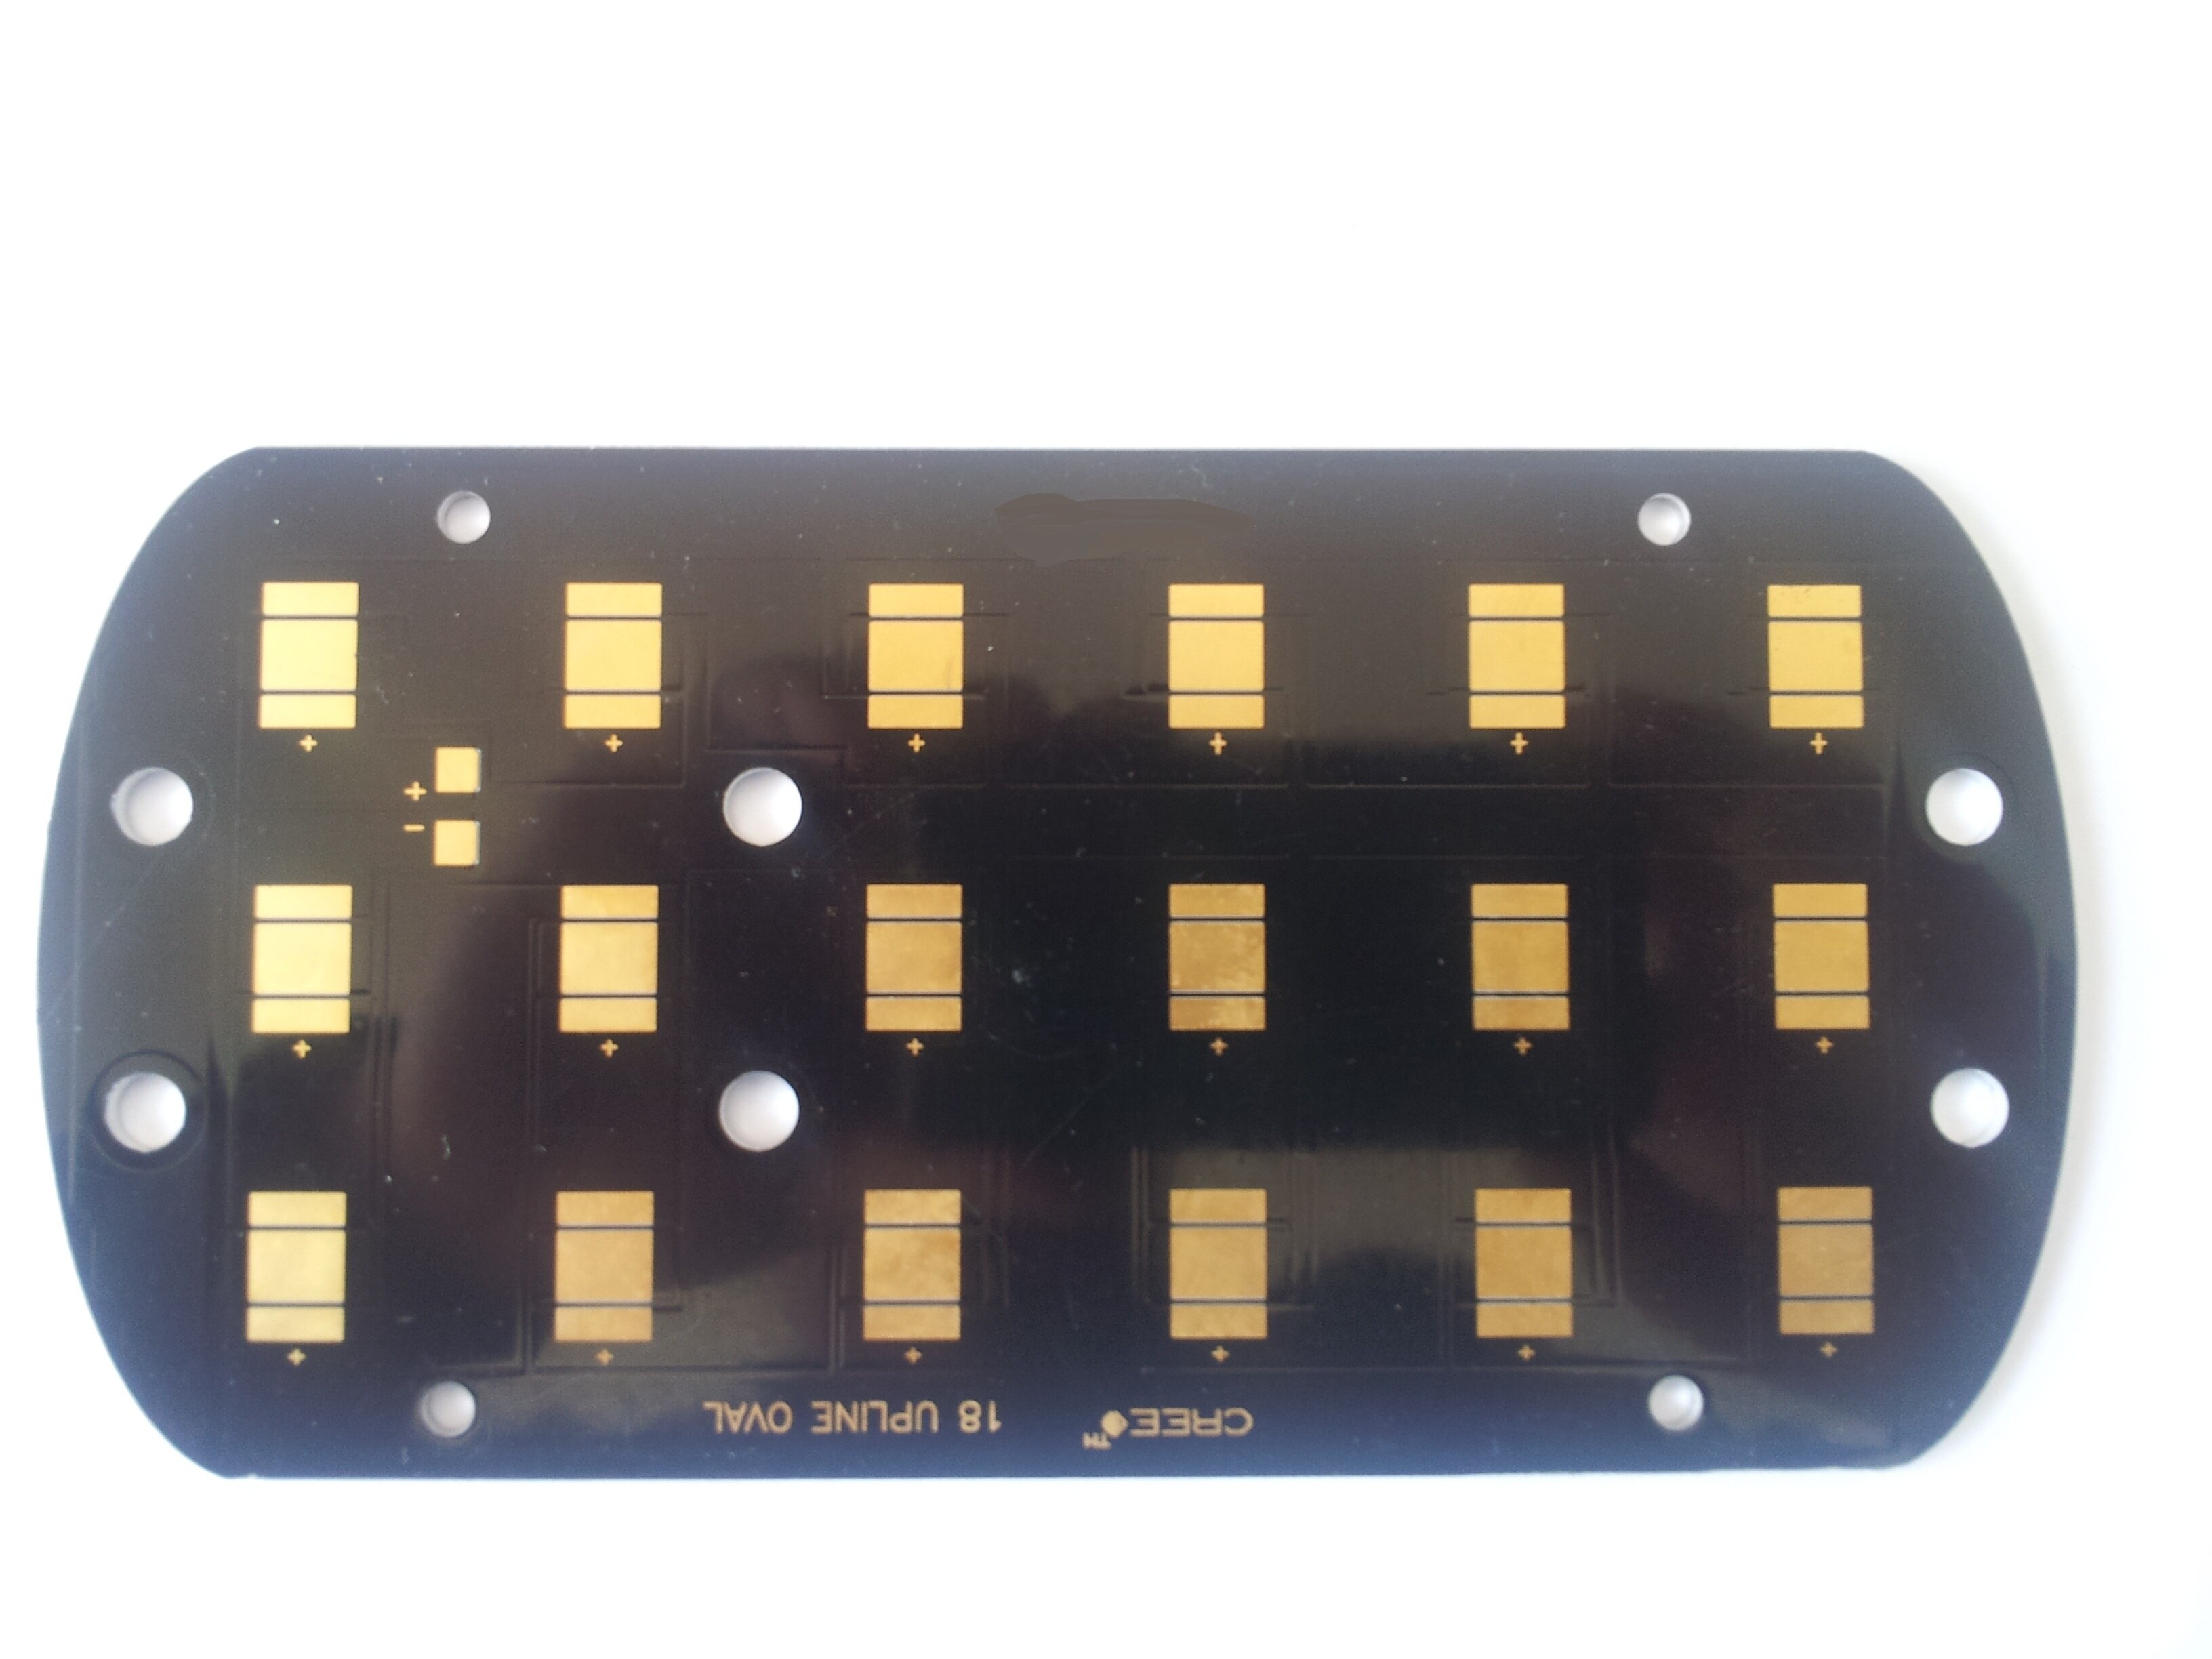 FR-4 Hoge Precisie Dubbele Kanten Pcb Board,FR-4, 22F, CEM-3, CEM-1, Aluminium, Hb, 94V0